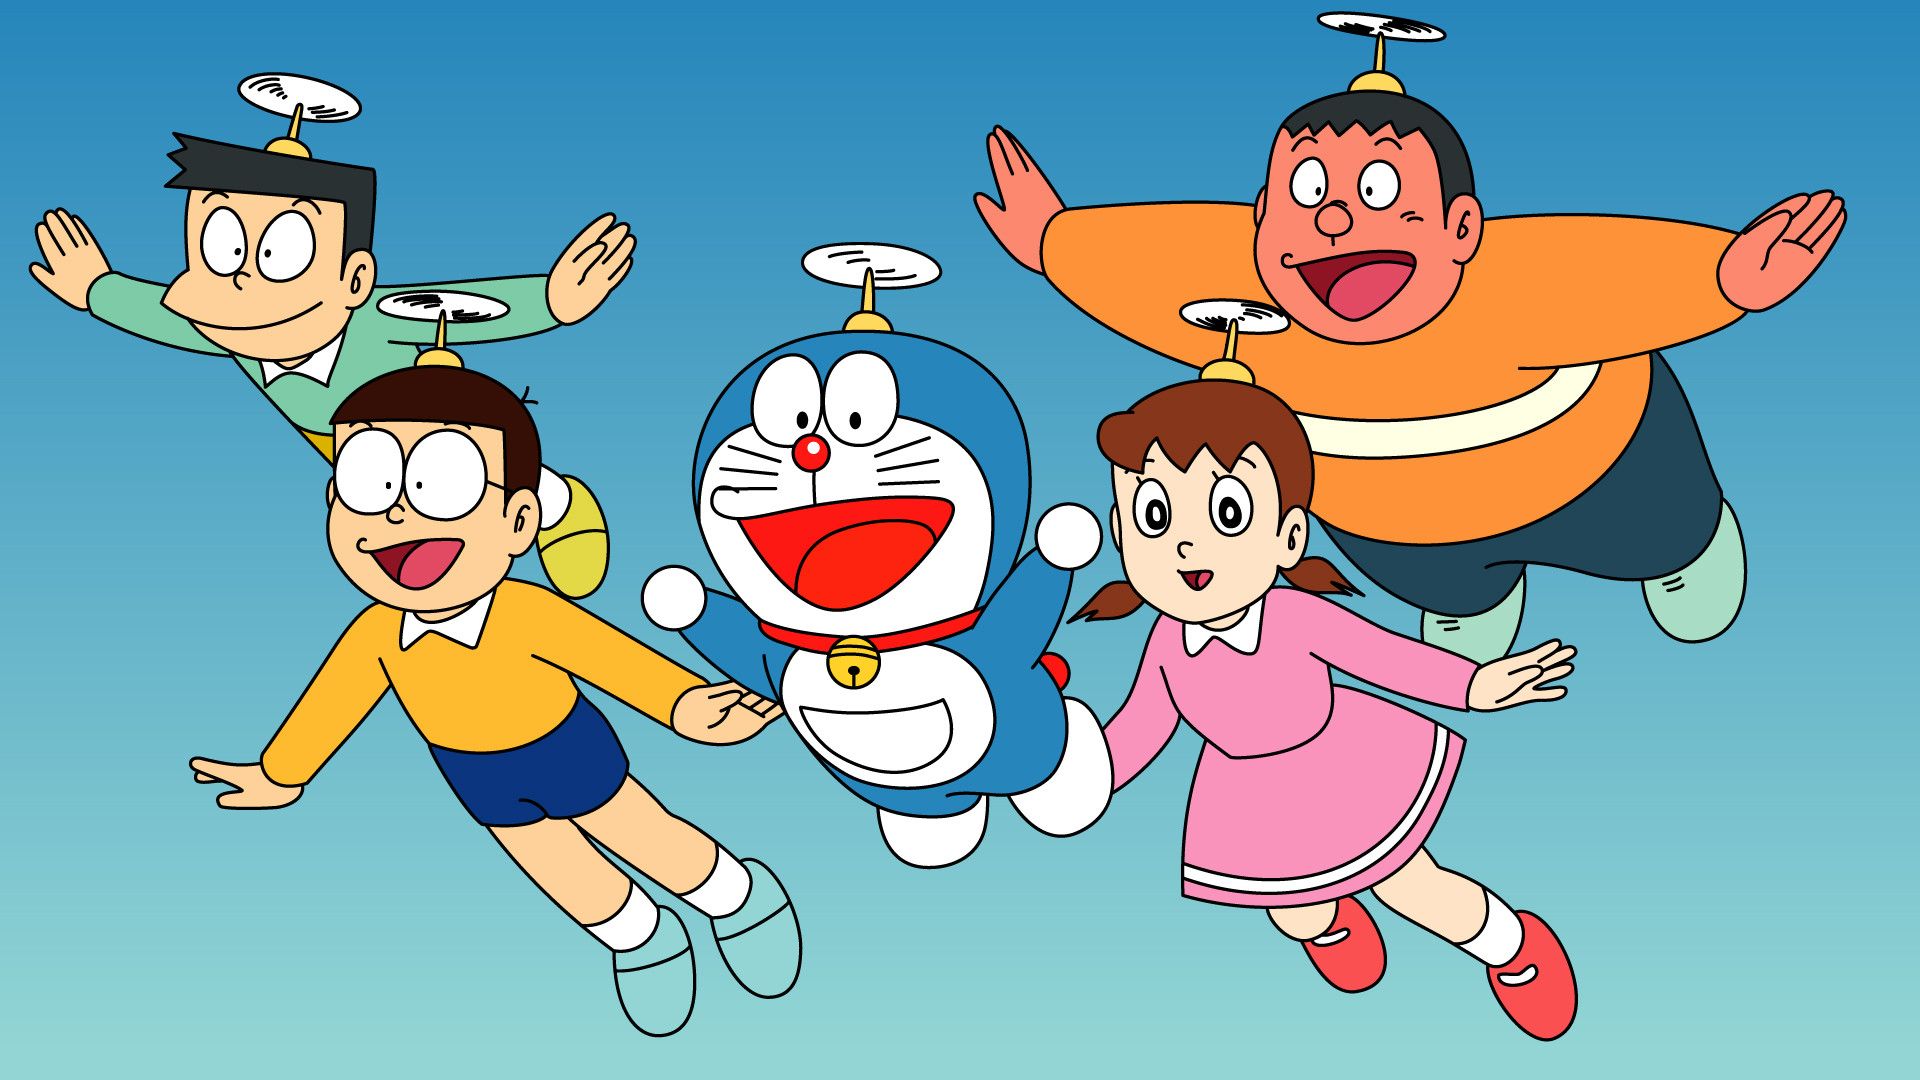 Viva Belgrado - Ulises 2016 - Página 15 Doraemon